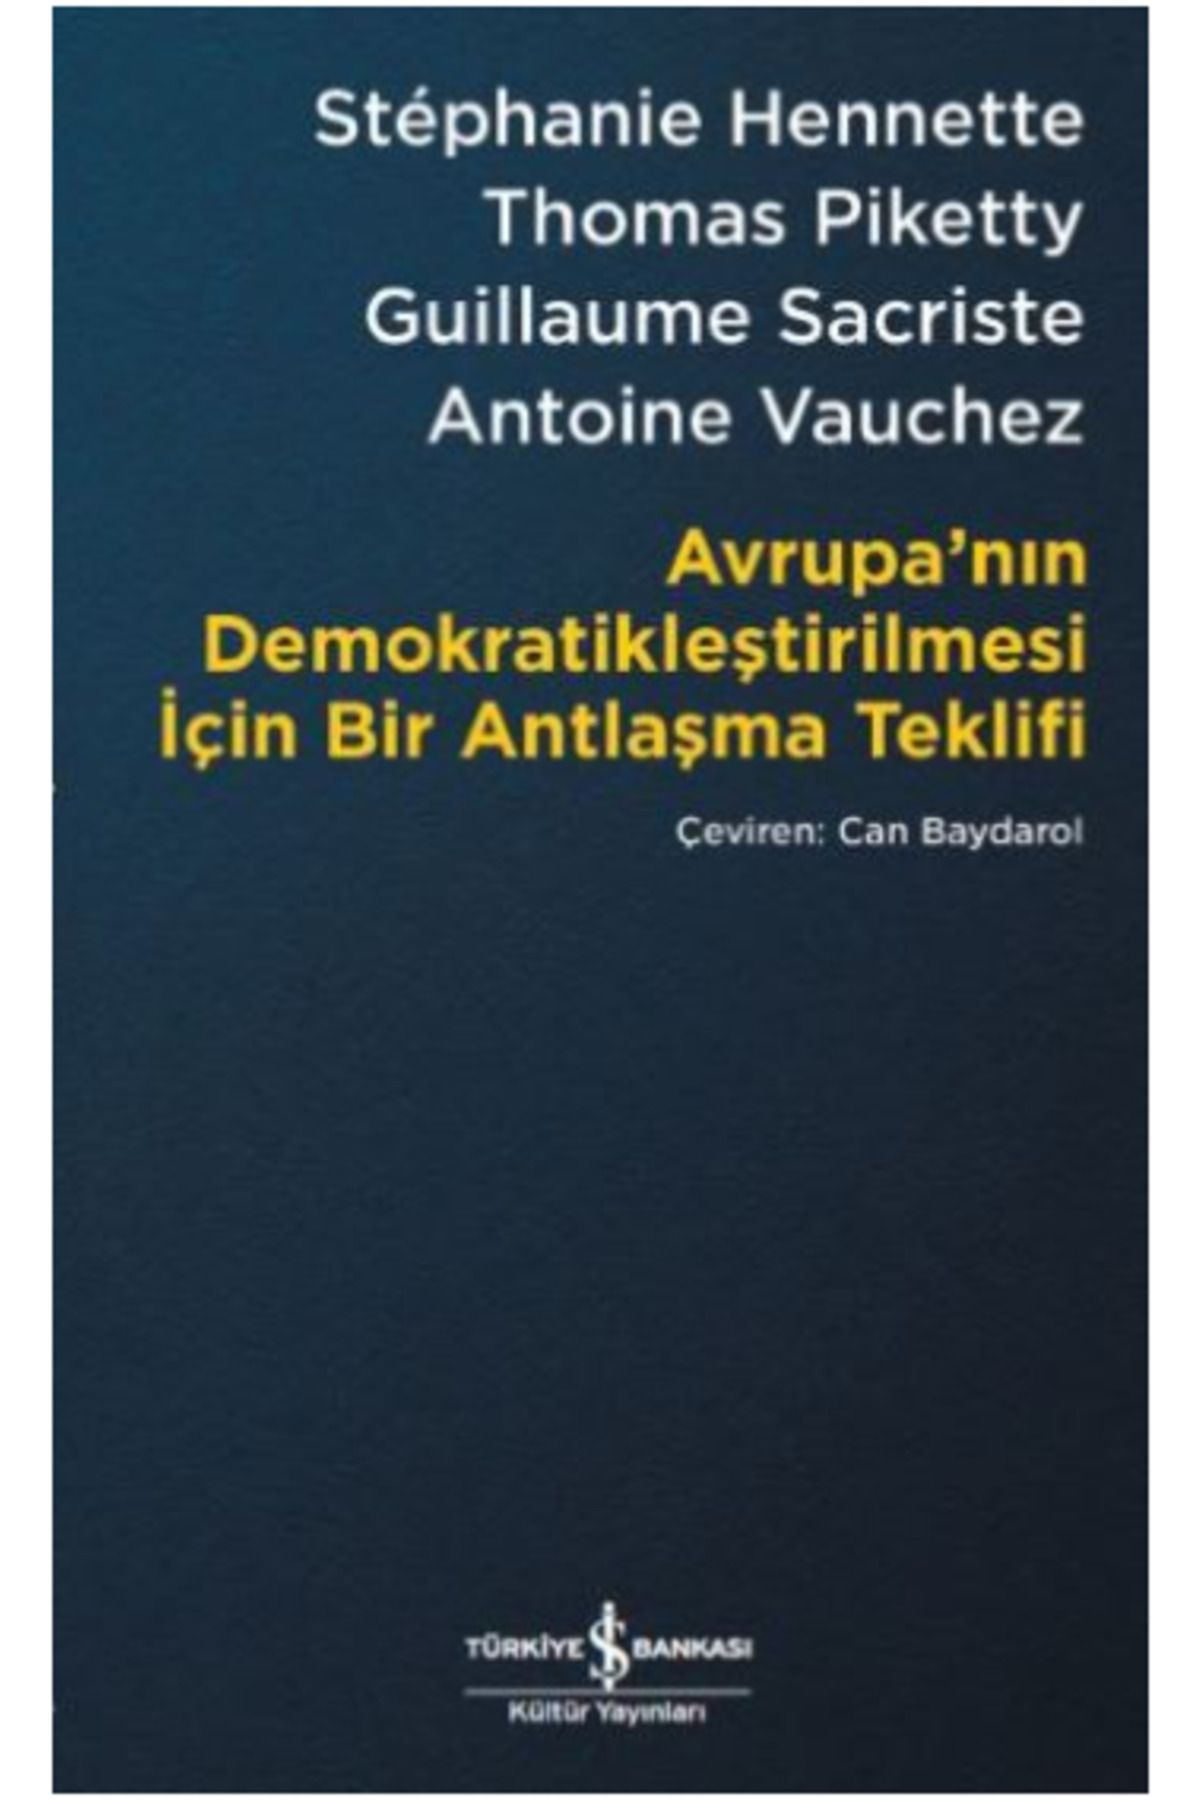 Türkiye İş Bankası Kültür Yayınları Avrupa’nın Demokratikleştirilmesi Için Bir Antlaşma Teklifi